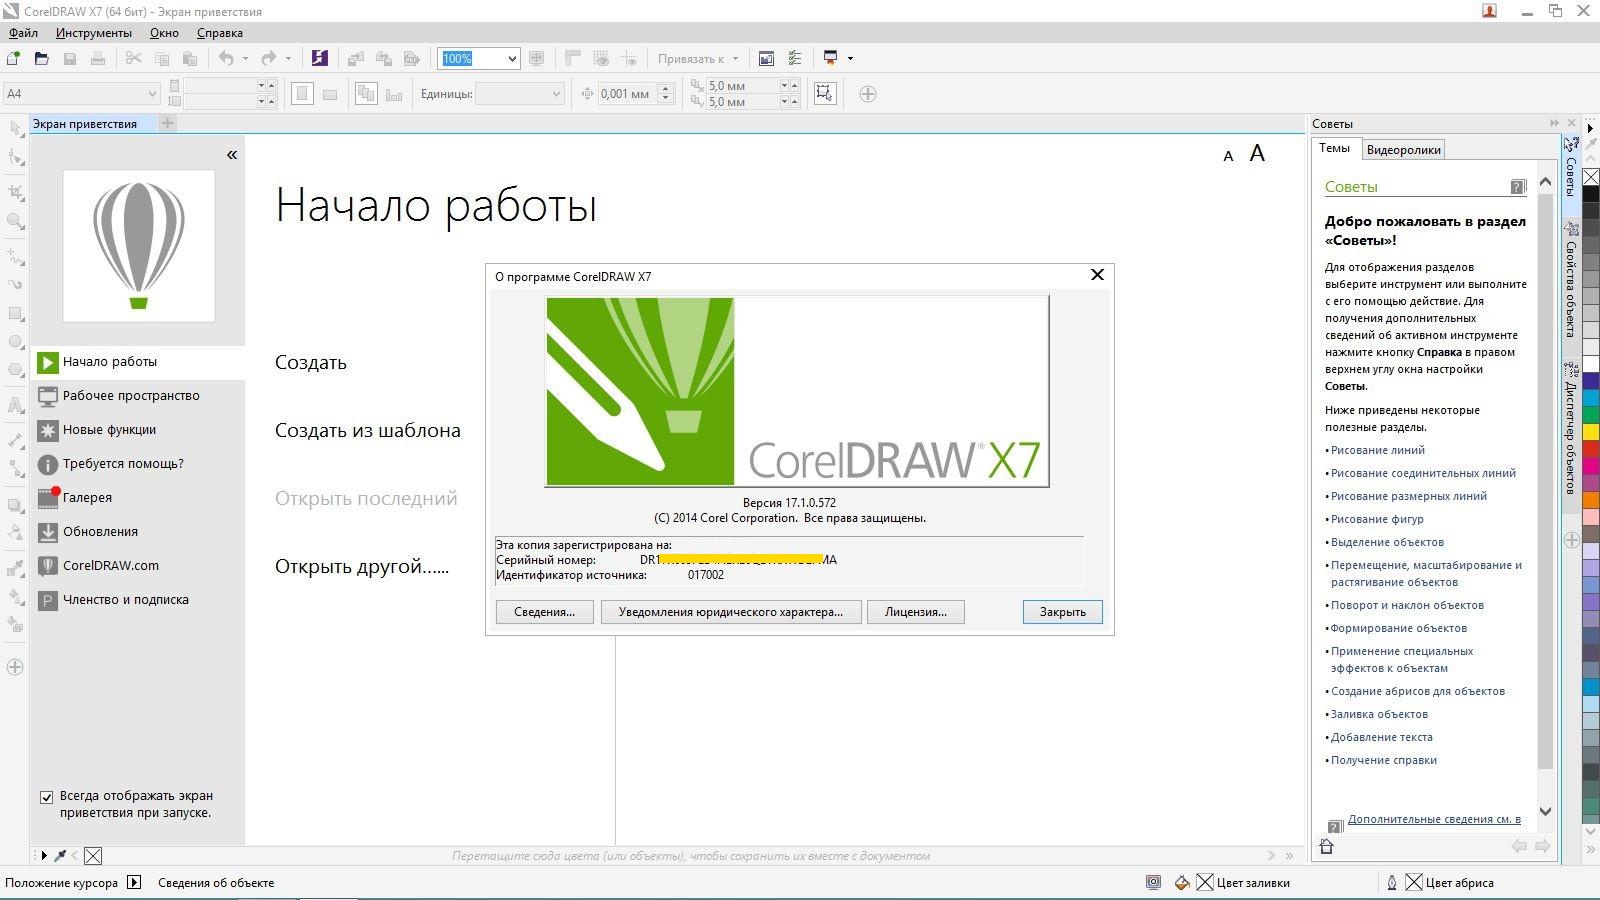 Coreldraw x7 rus скачать торрент 64 bit